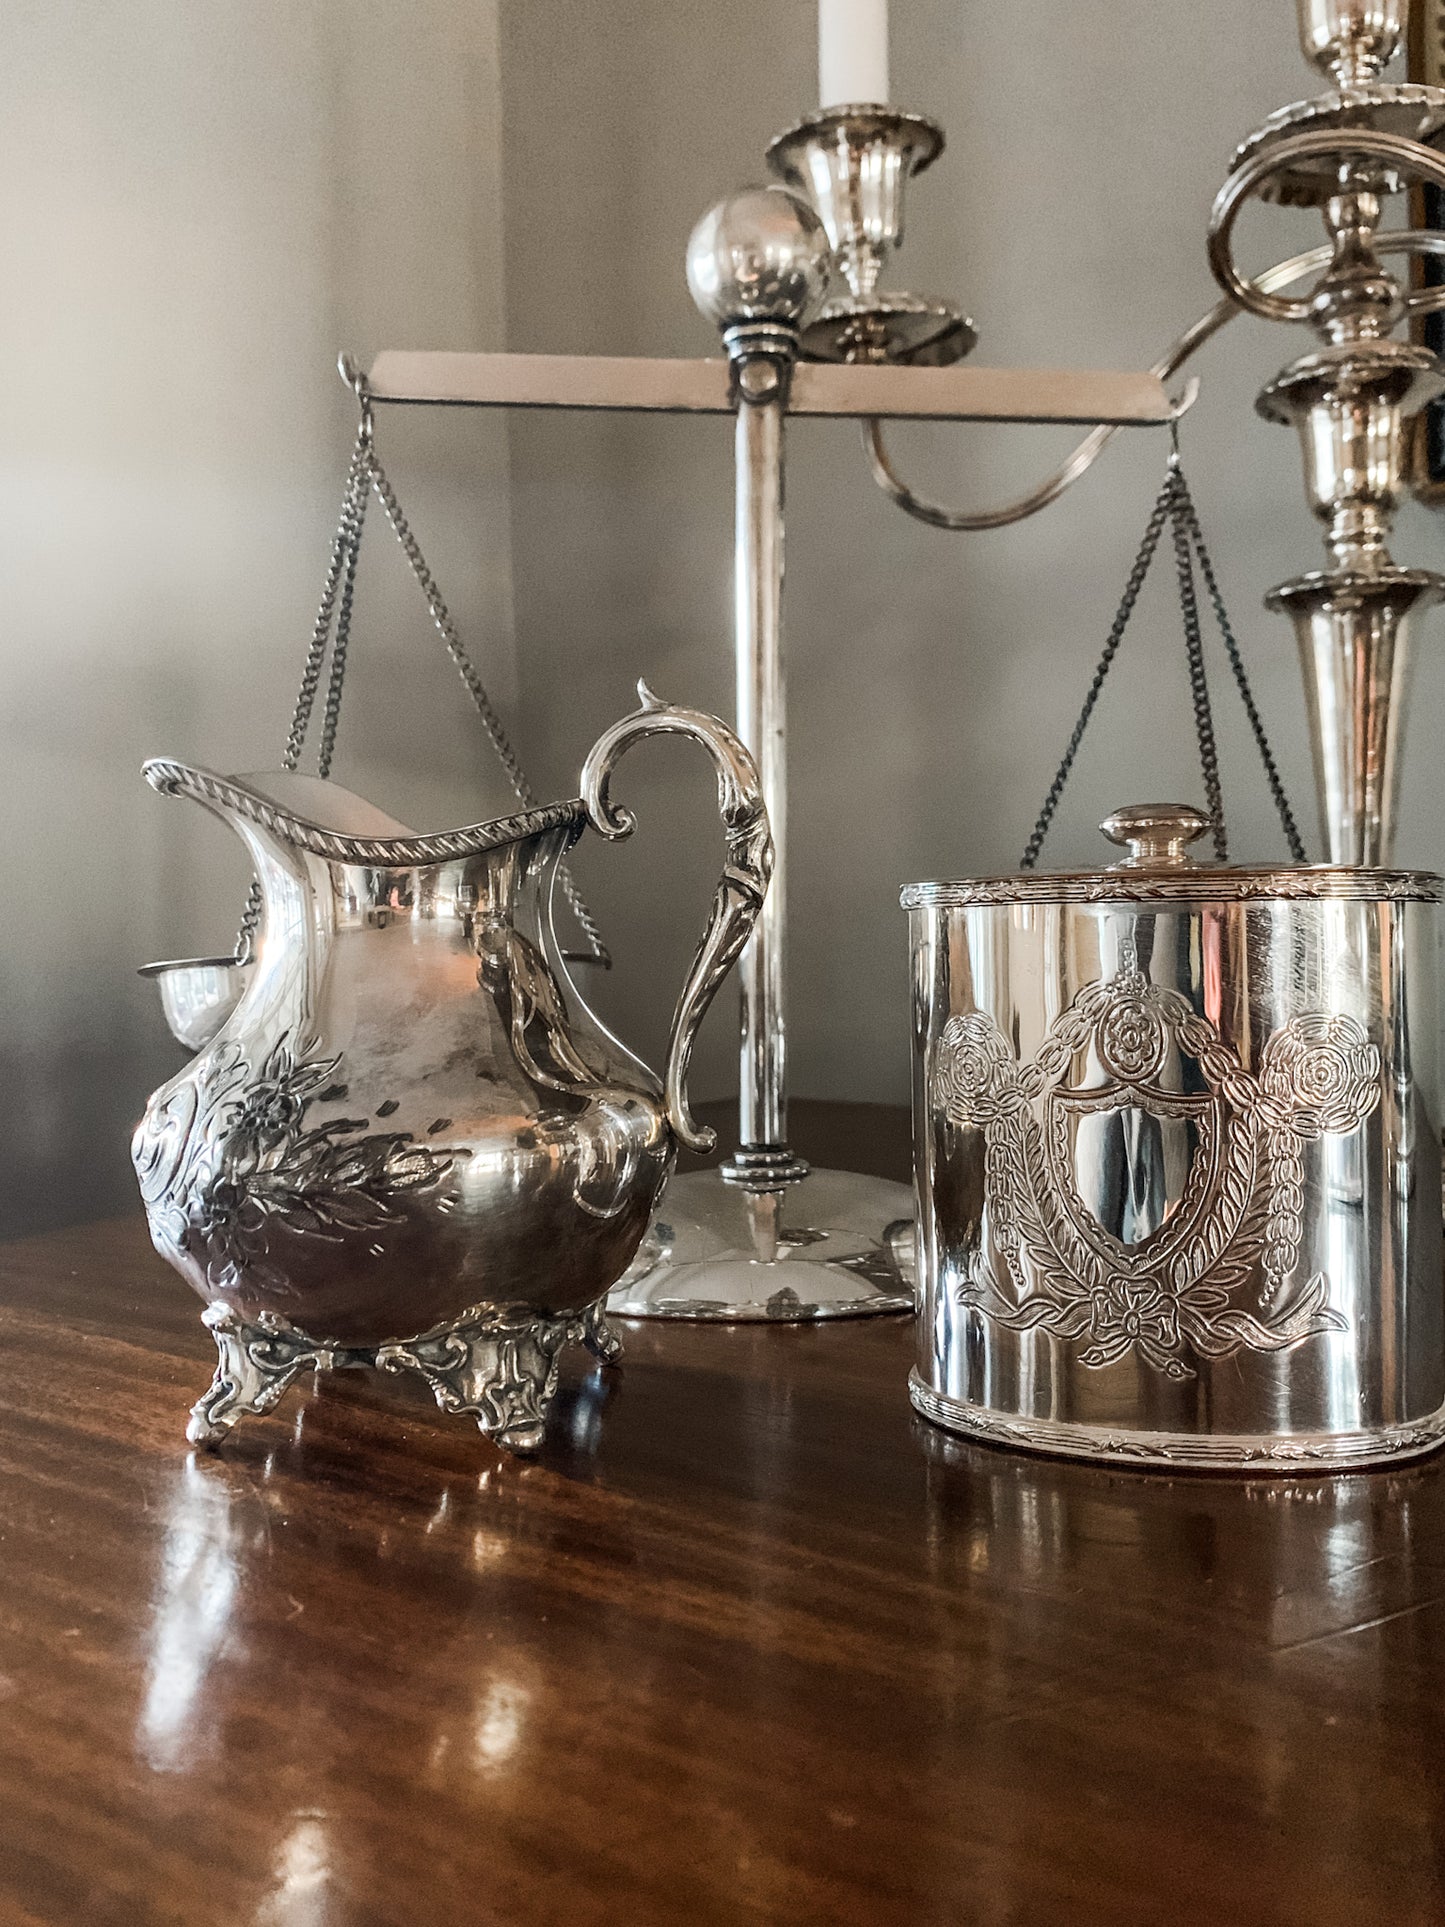 Exquisite Antique English Tea Caddy